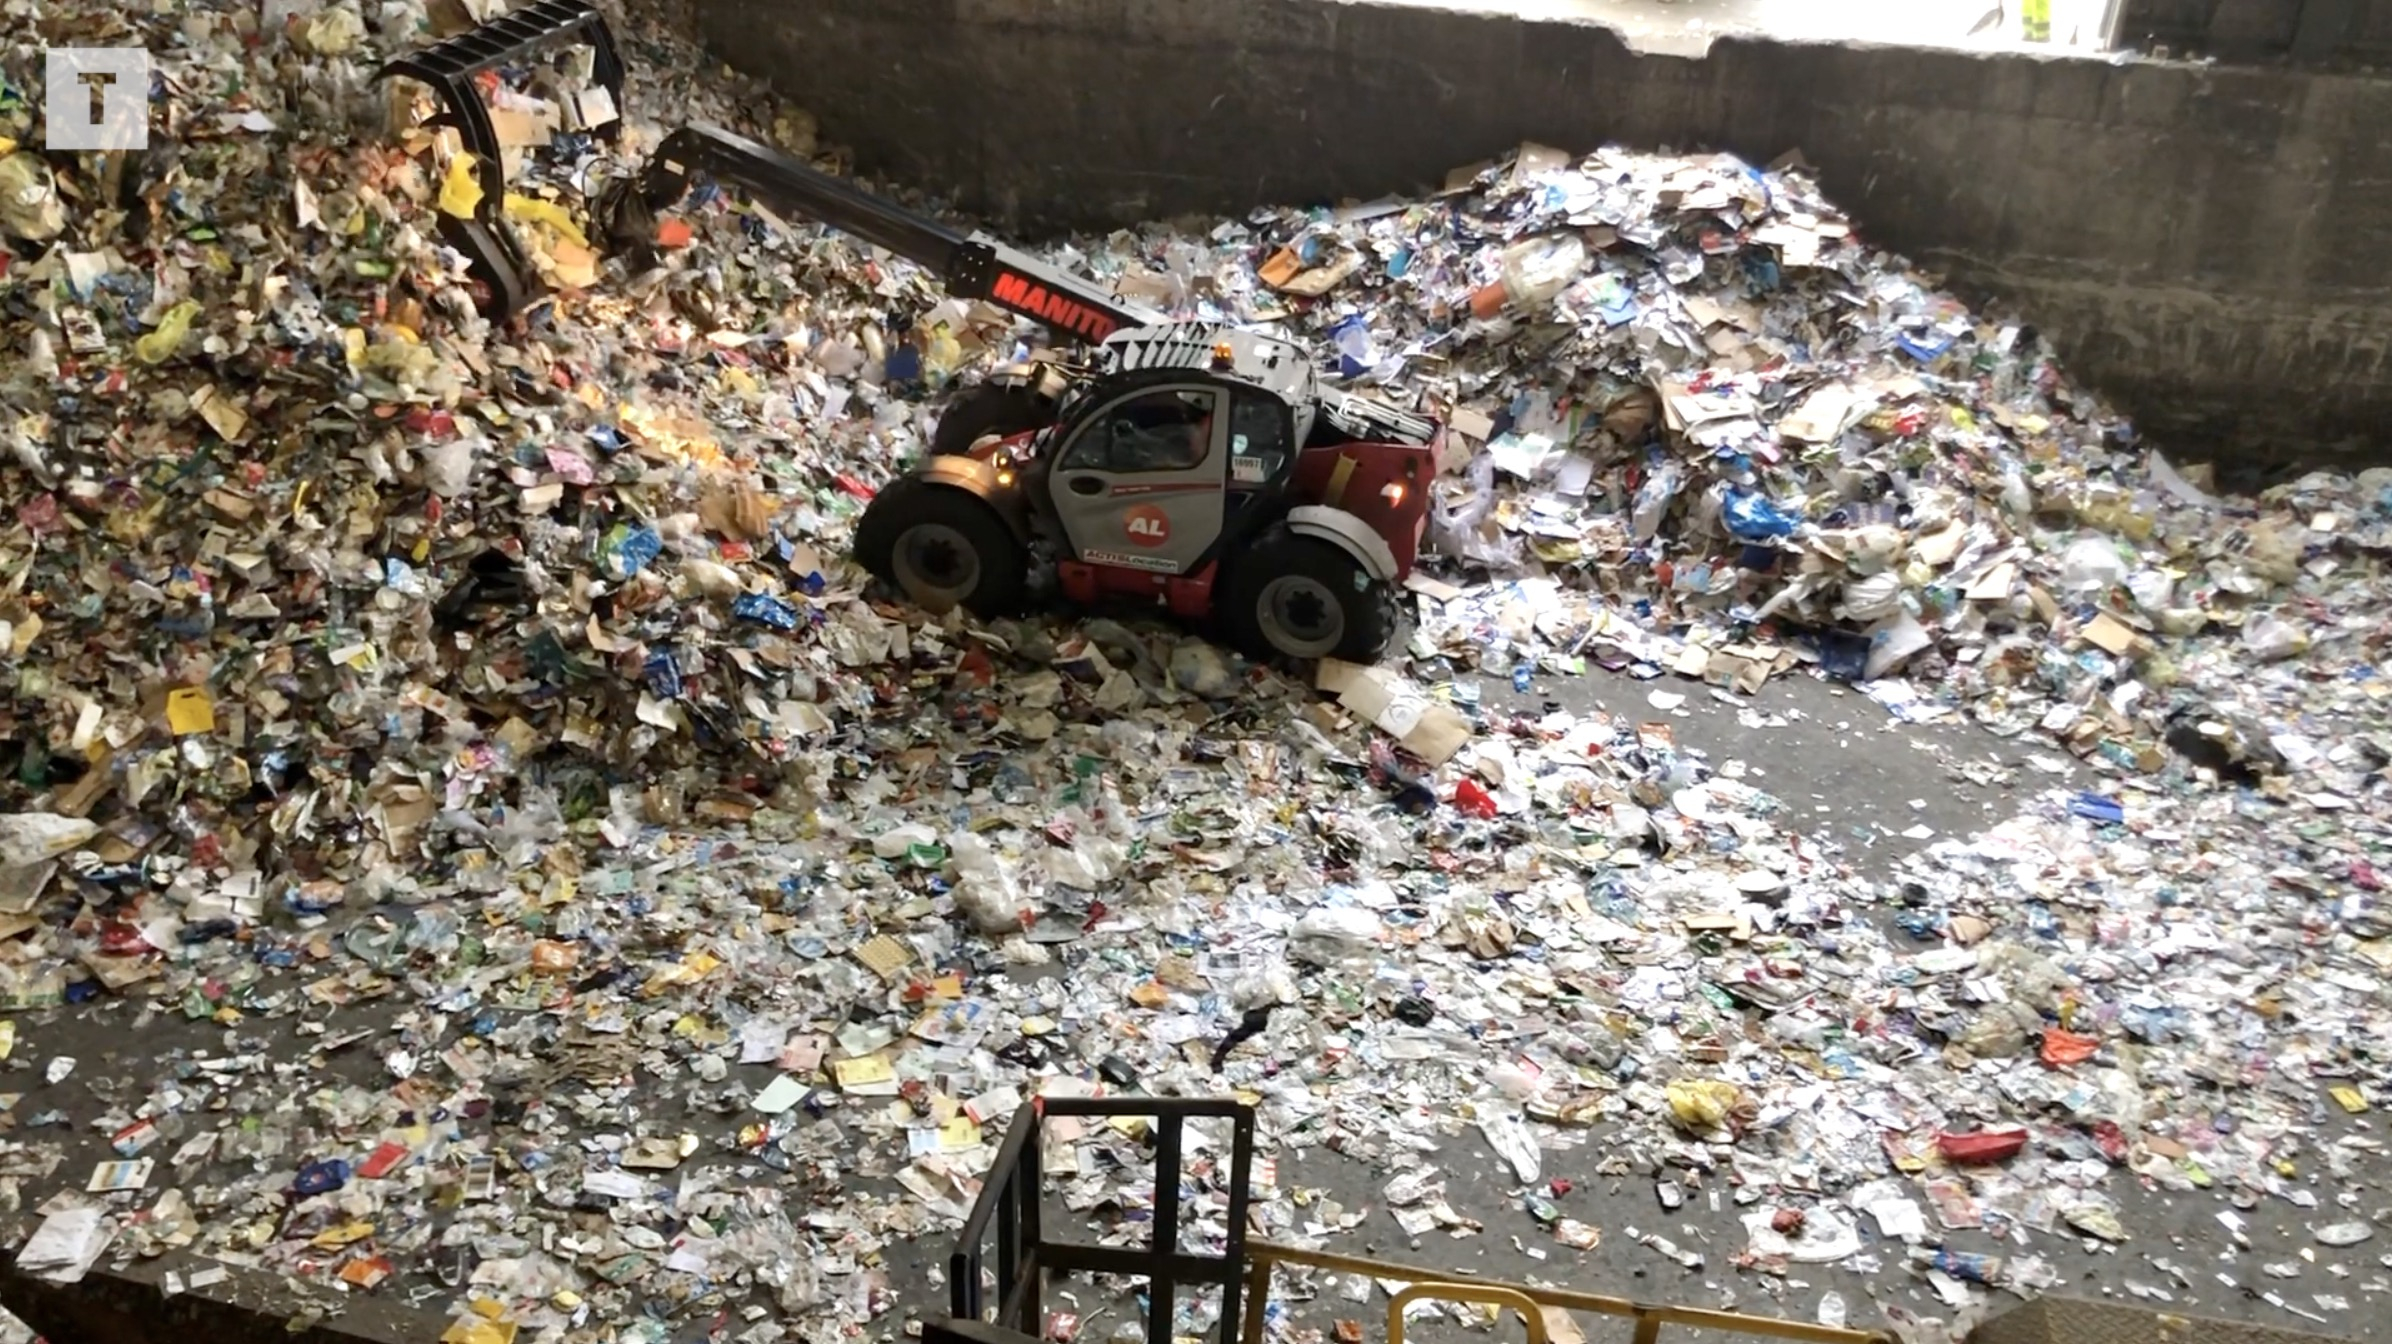 Saint-Brieuc. Le tri des déchets examiné à la loupe (Le Télégramme)